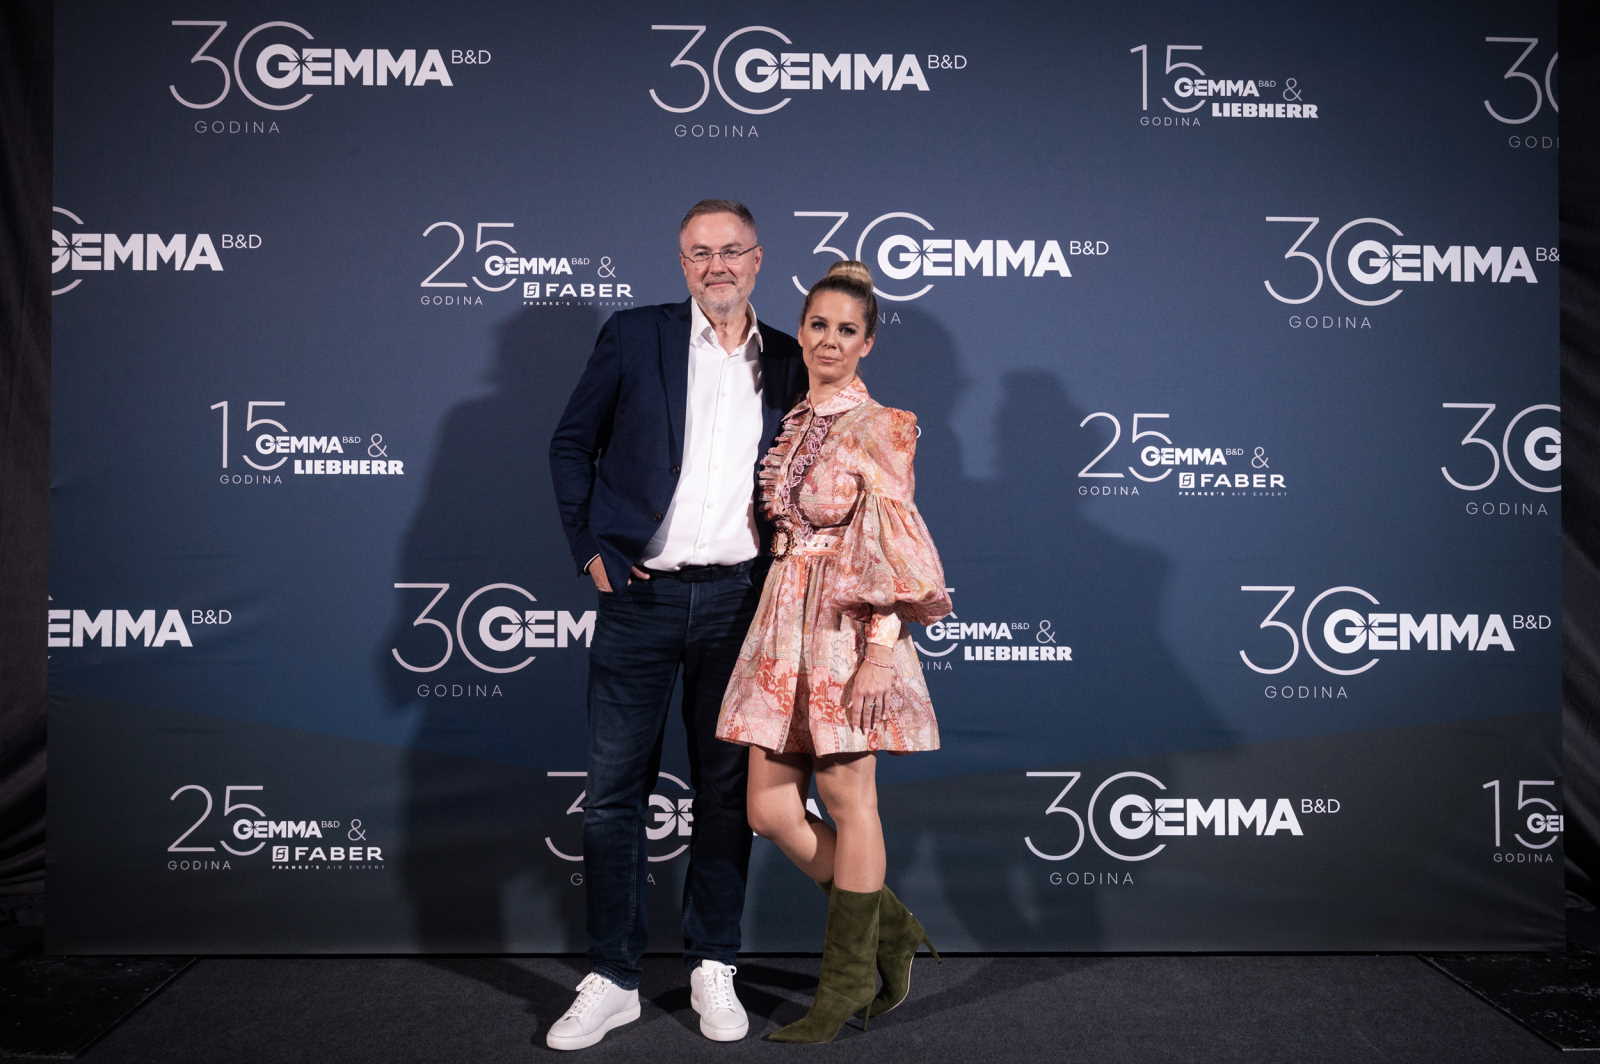 Tvrtka Gemma B&D proslavila 30 godina uspješnog poslovanja u regiji